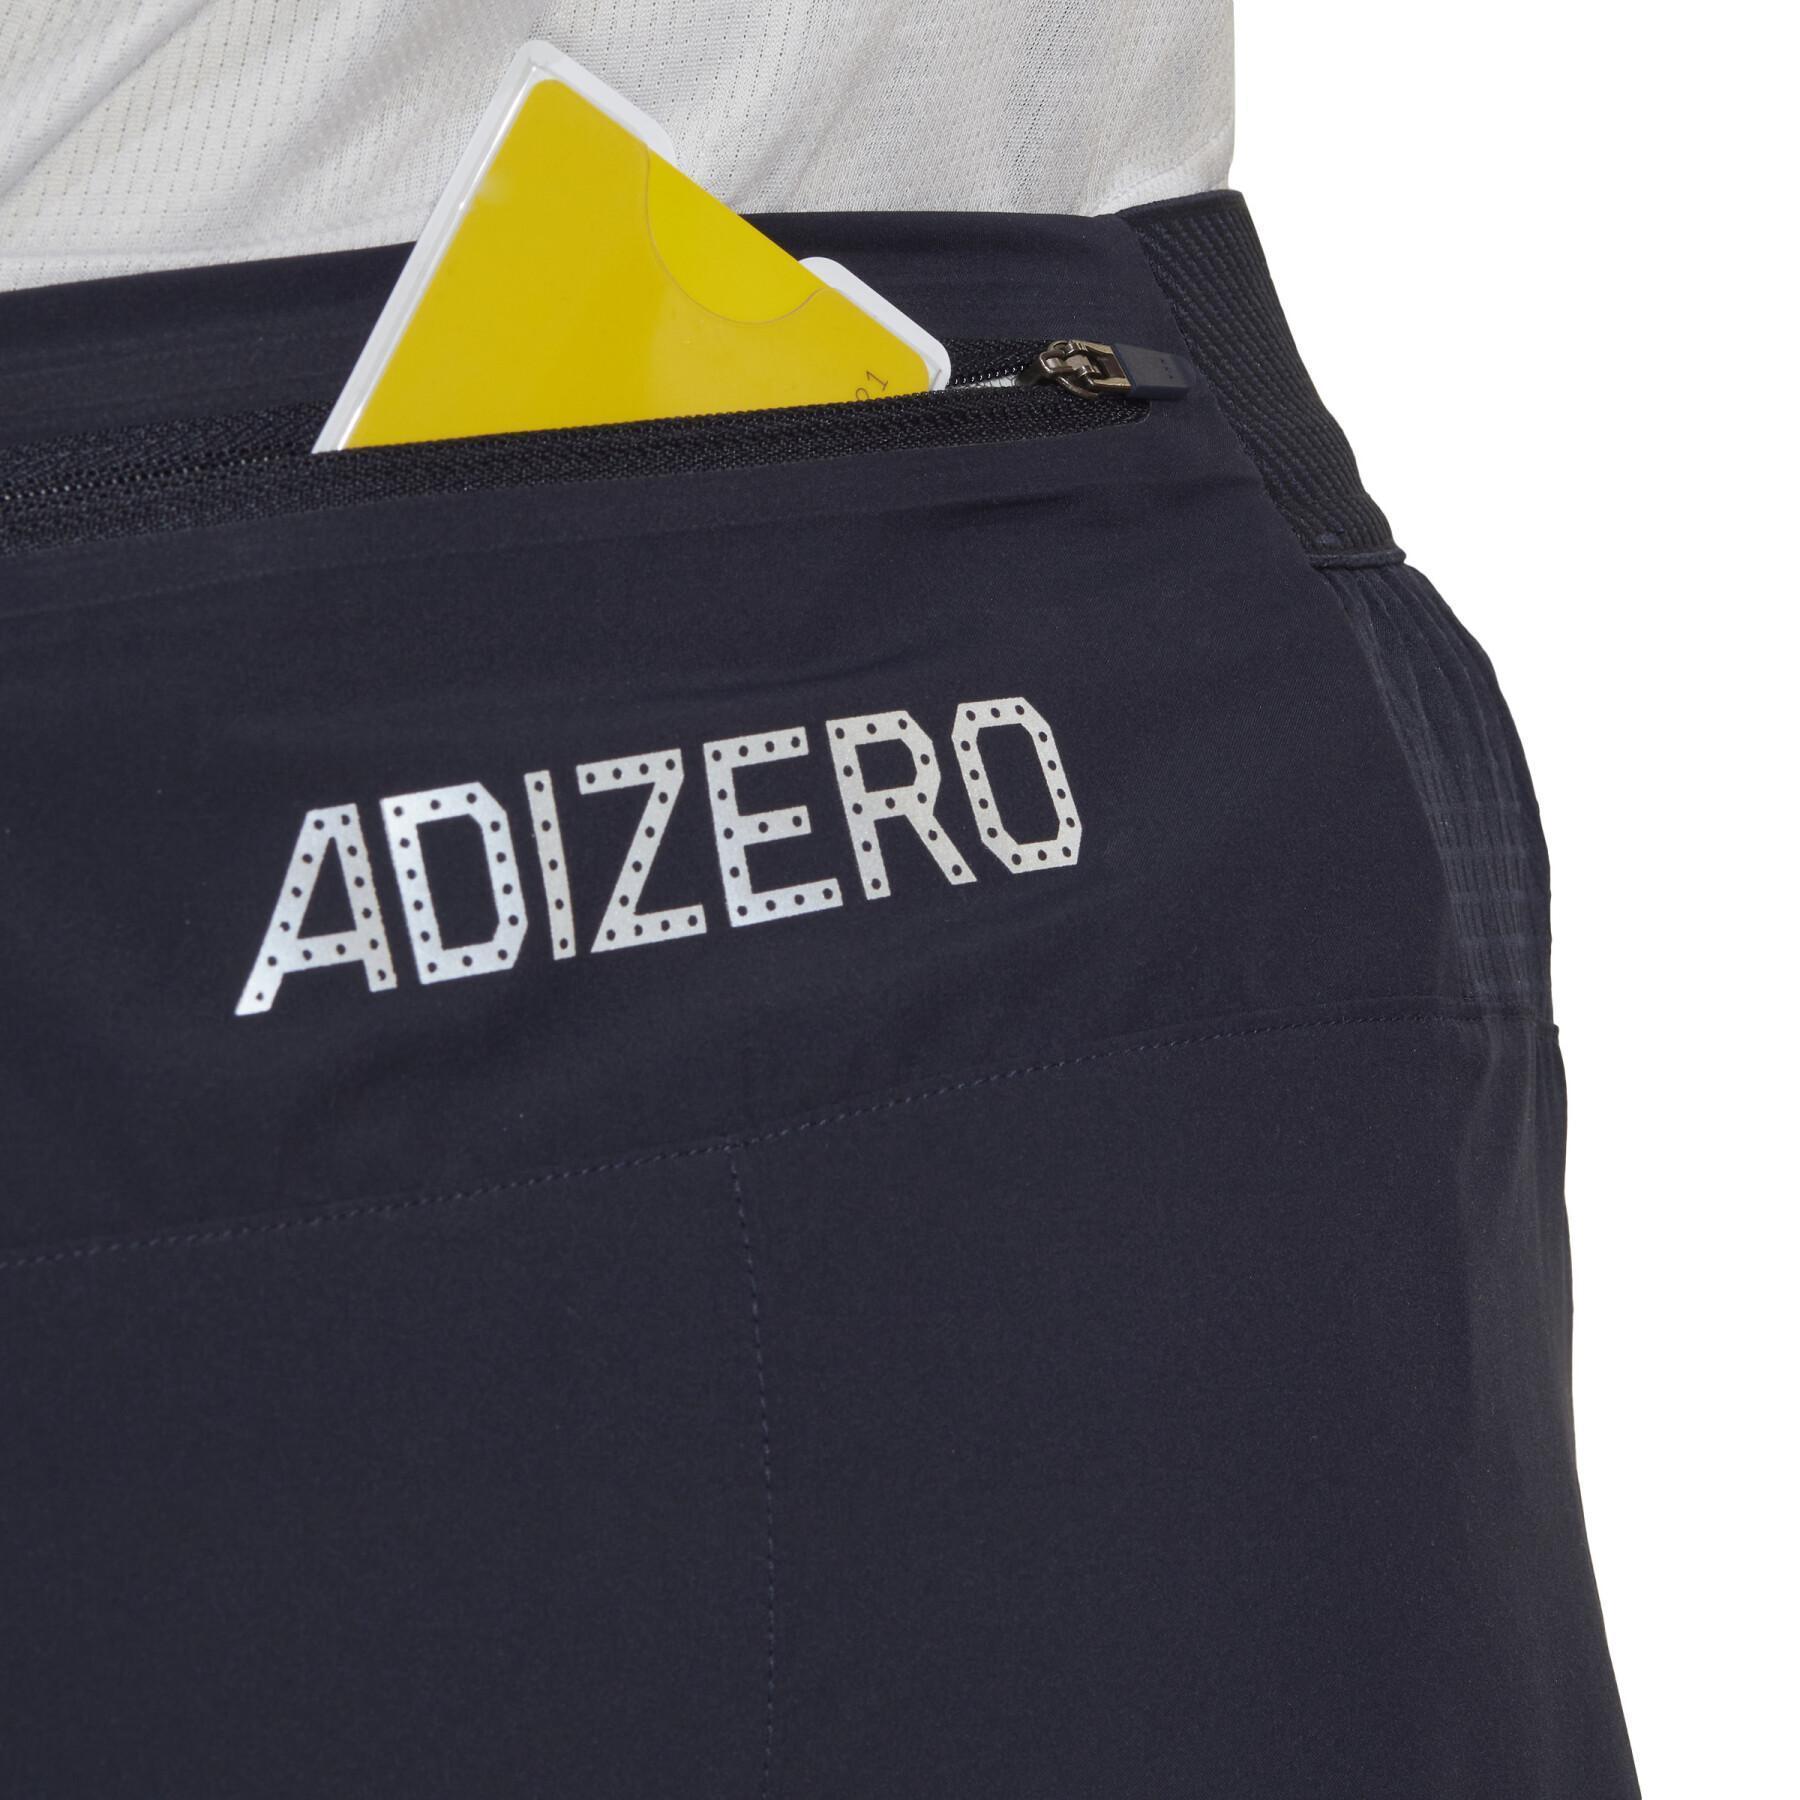 Shorts adidas 65 Adizero